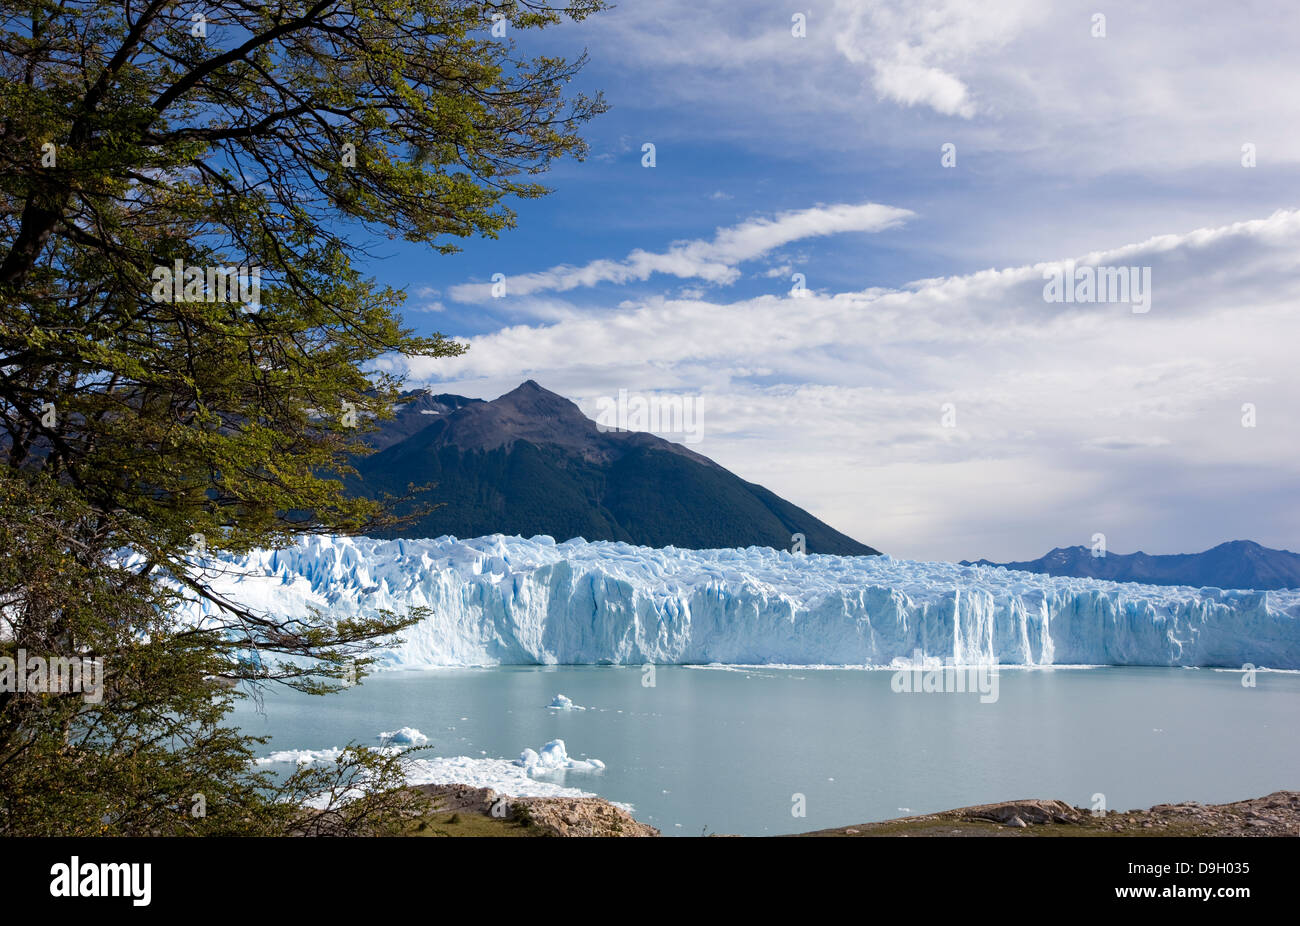 Perito Moreno Glacier. This glacier originates from the Southern Patagonian Ice Field. Stock Photo